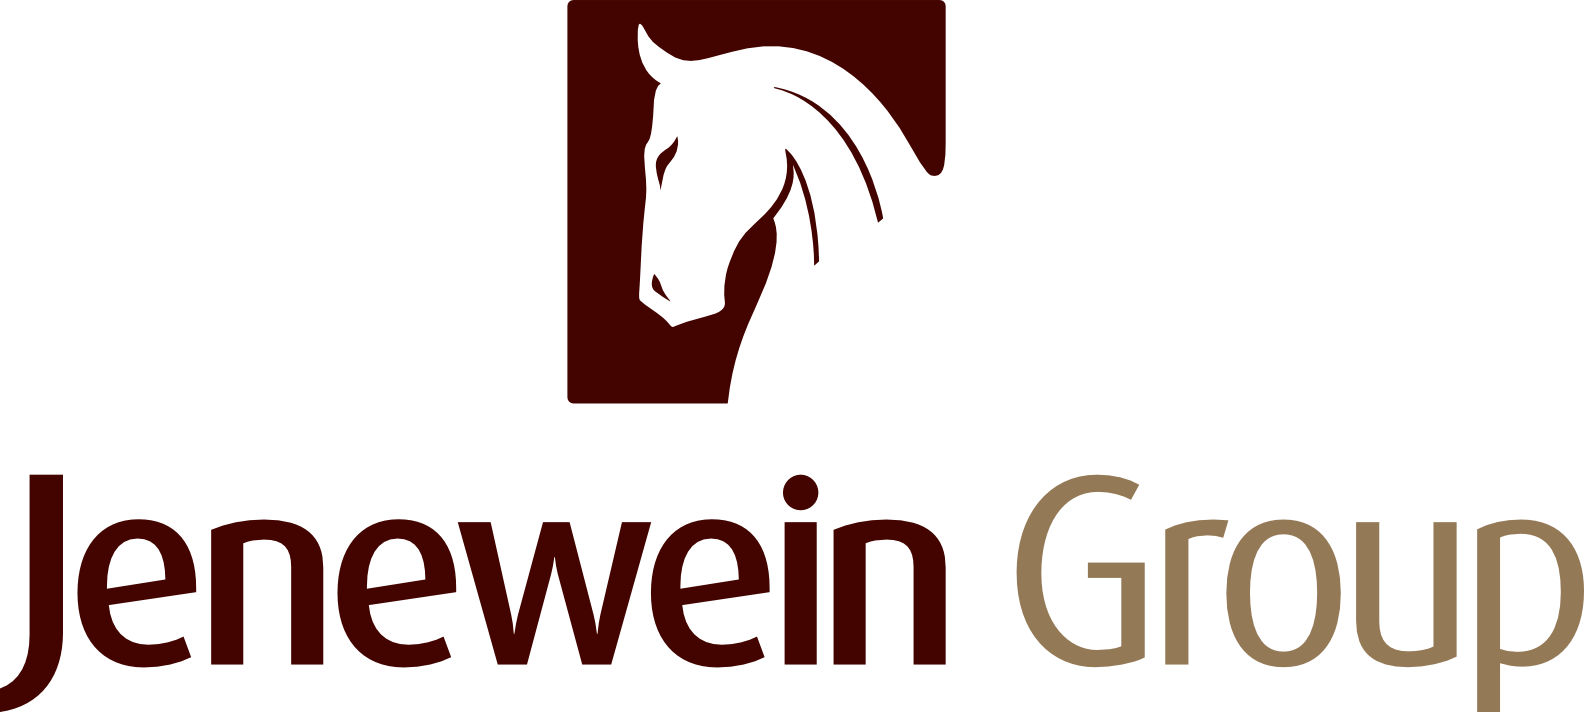 Jenewein Group